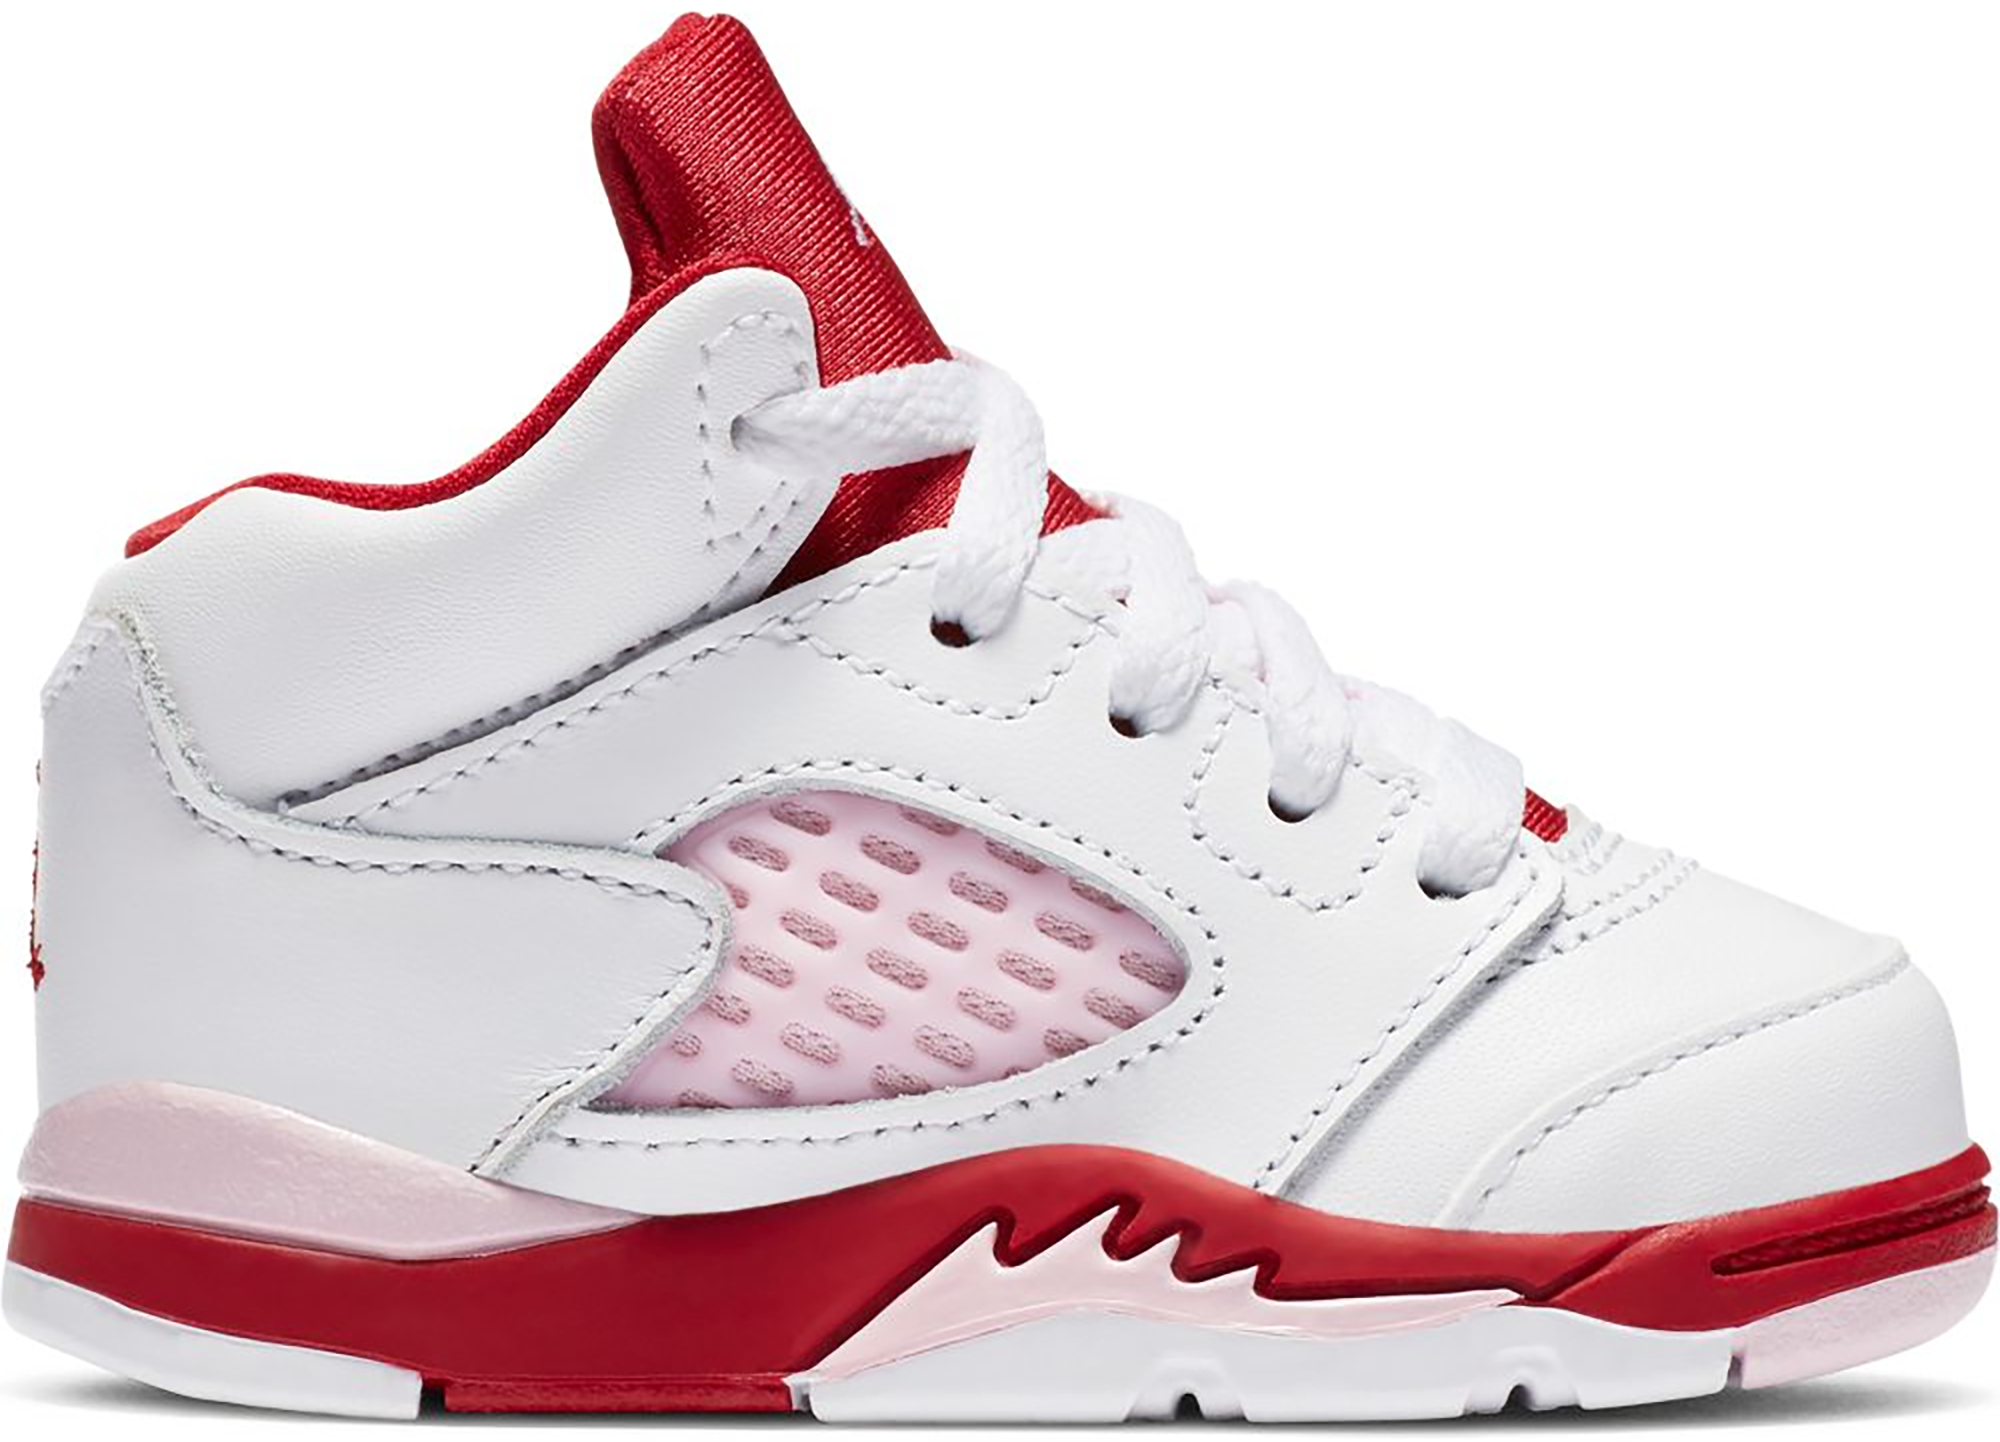 Jordan 5 Retro White Pink Red (TD 